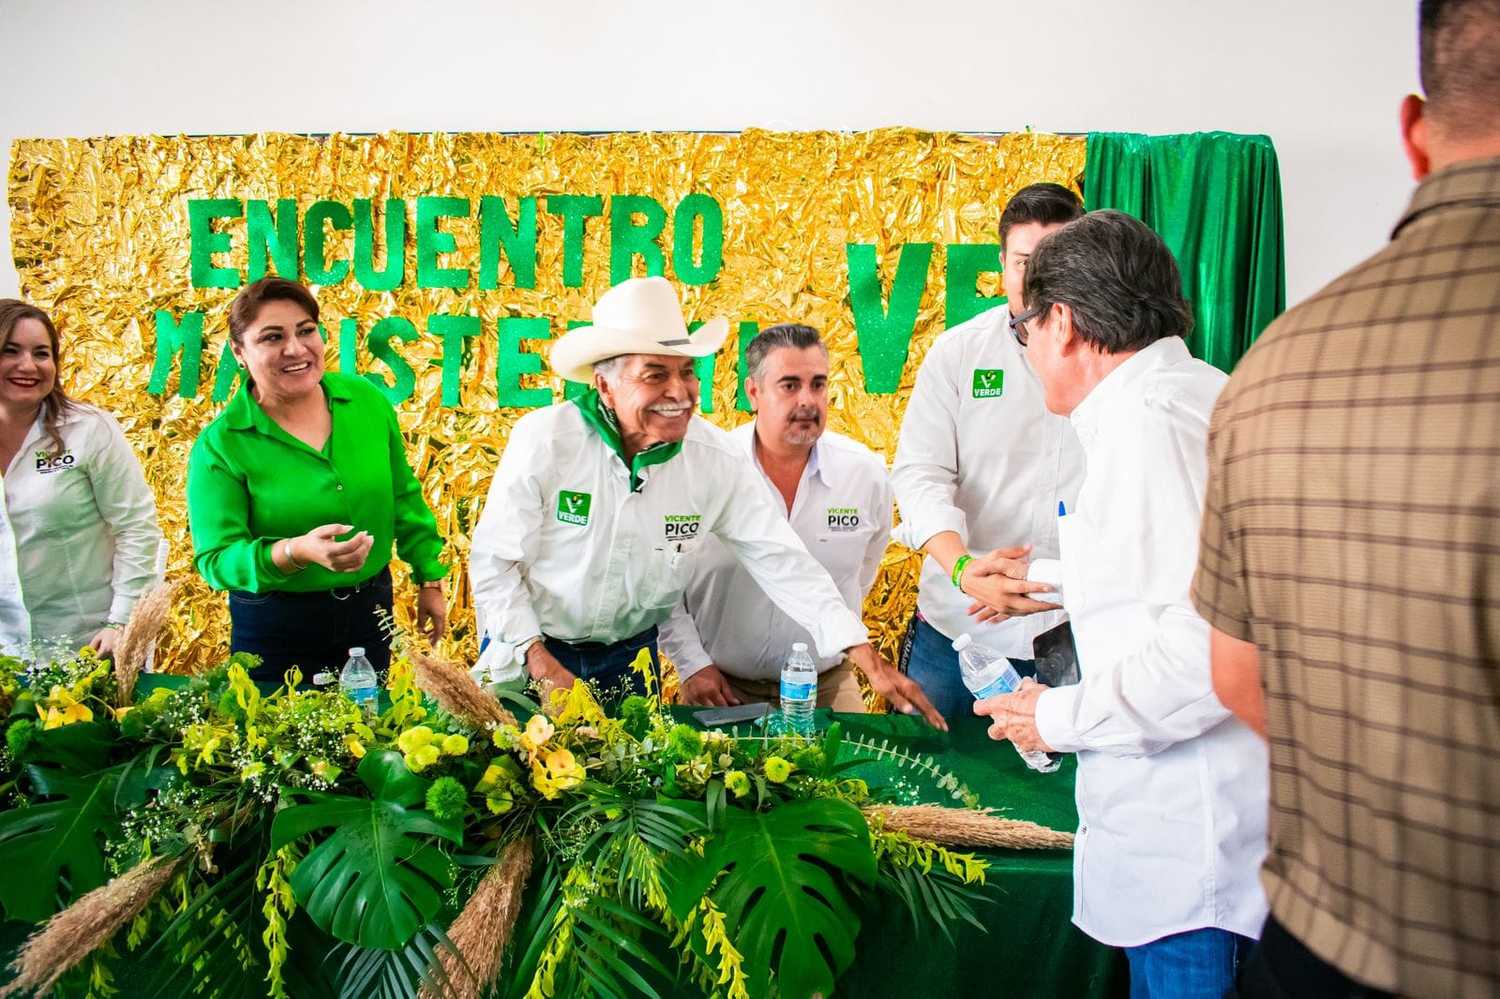   A medida que la cuenta regresiva avanza, más personas se unen a la candidatura de Vicente Pico y El Fuerte se tiñe de verde.